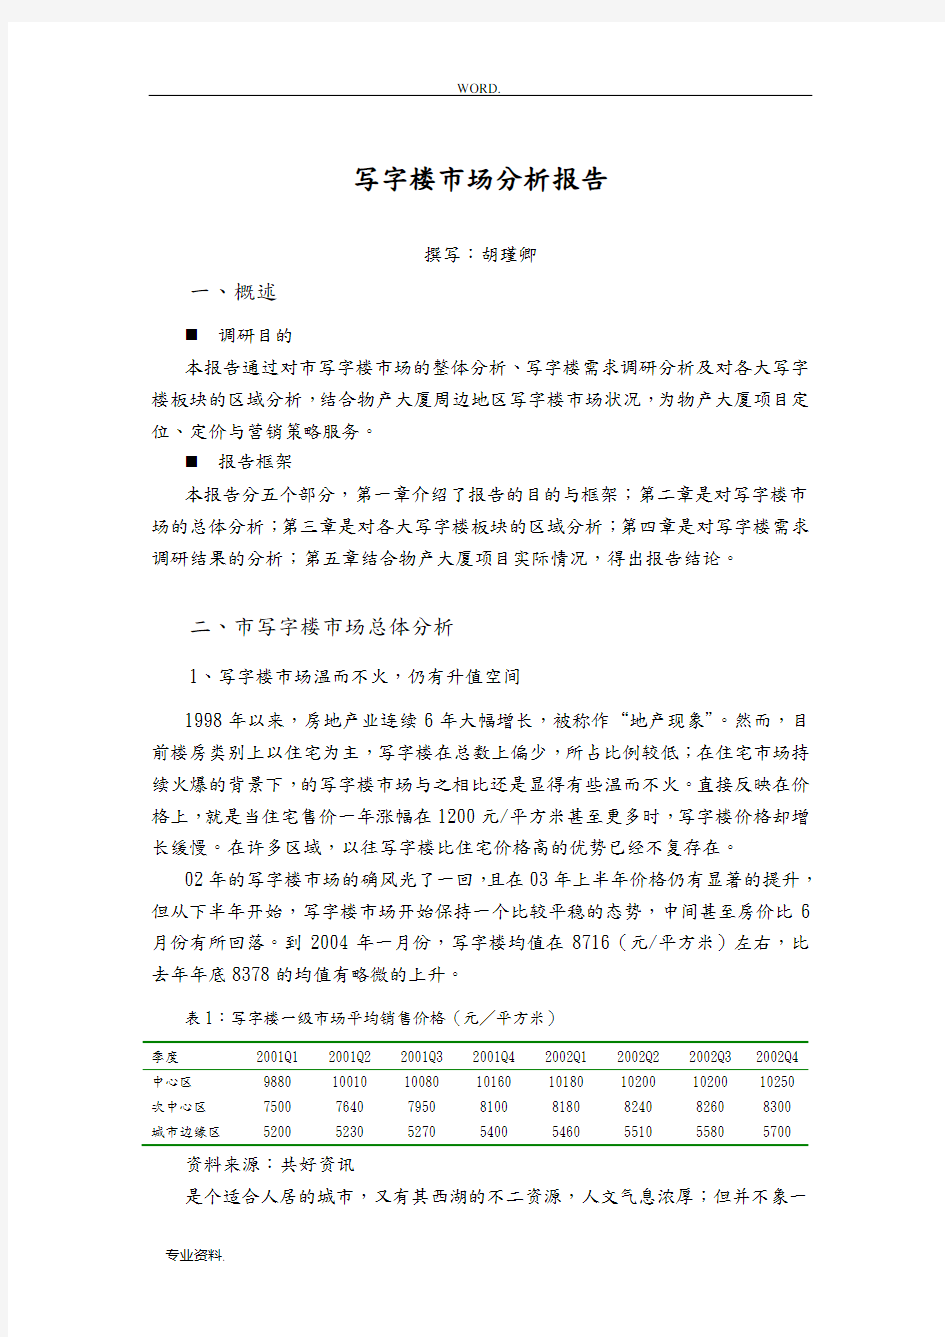 杭州写字楼市场分析报告文案